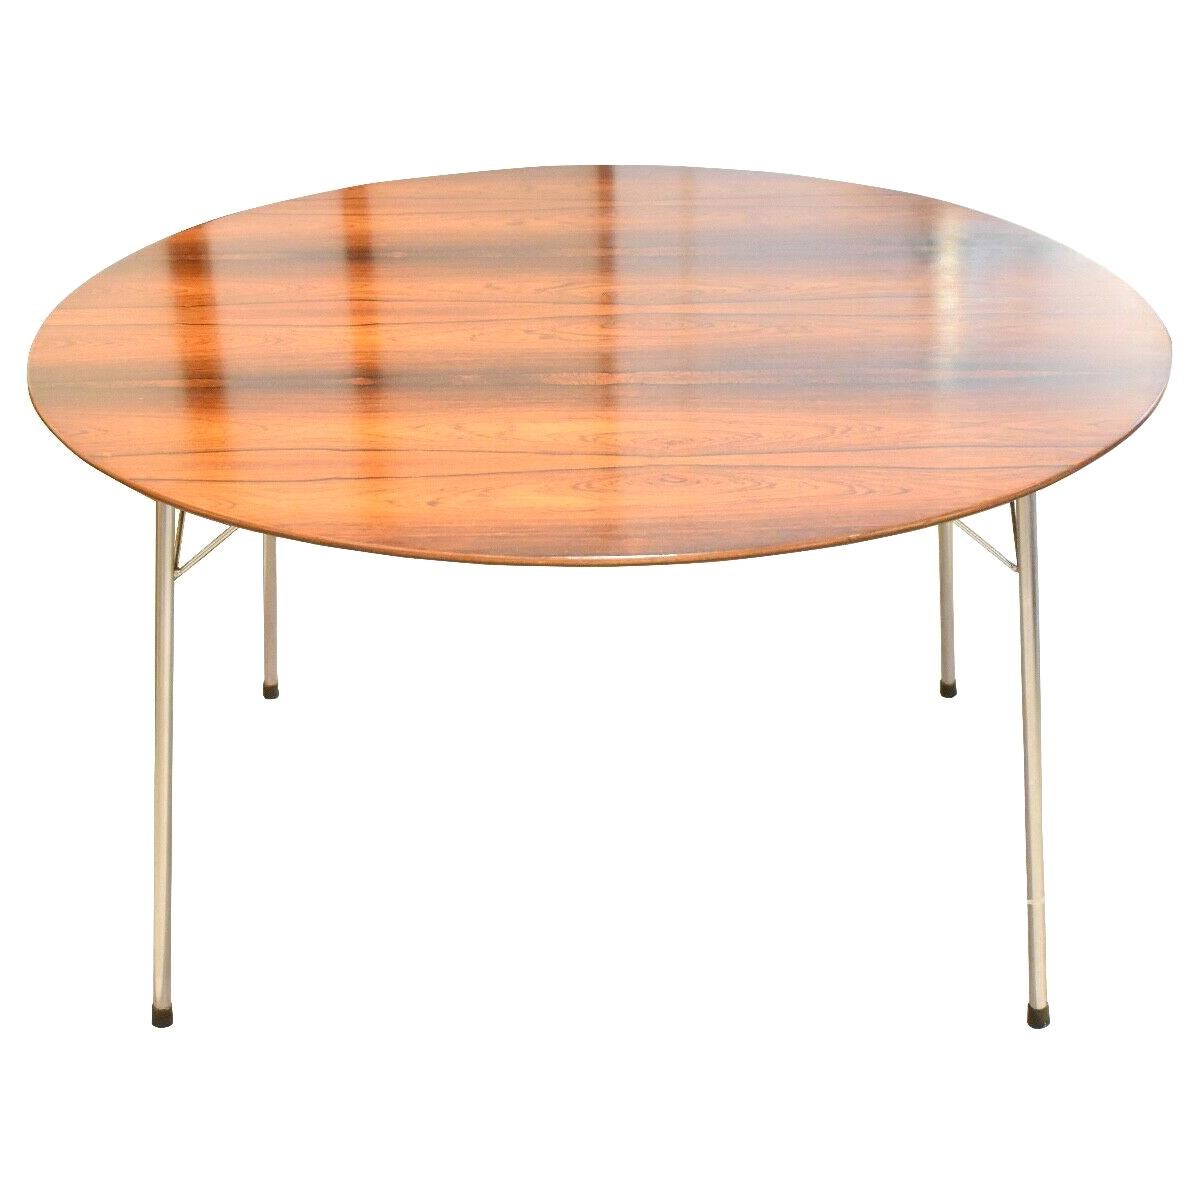 Arne Jacobsen Rosewood Dining Table for Fritz Hansen, Model 3600